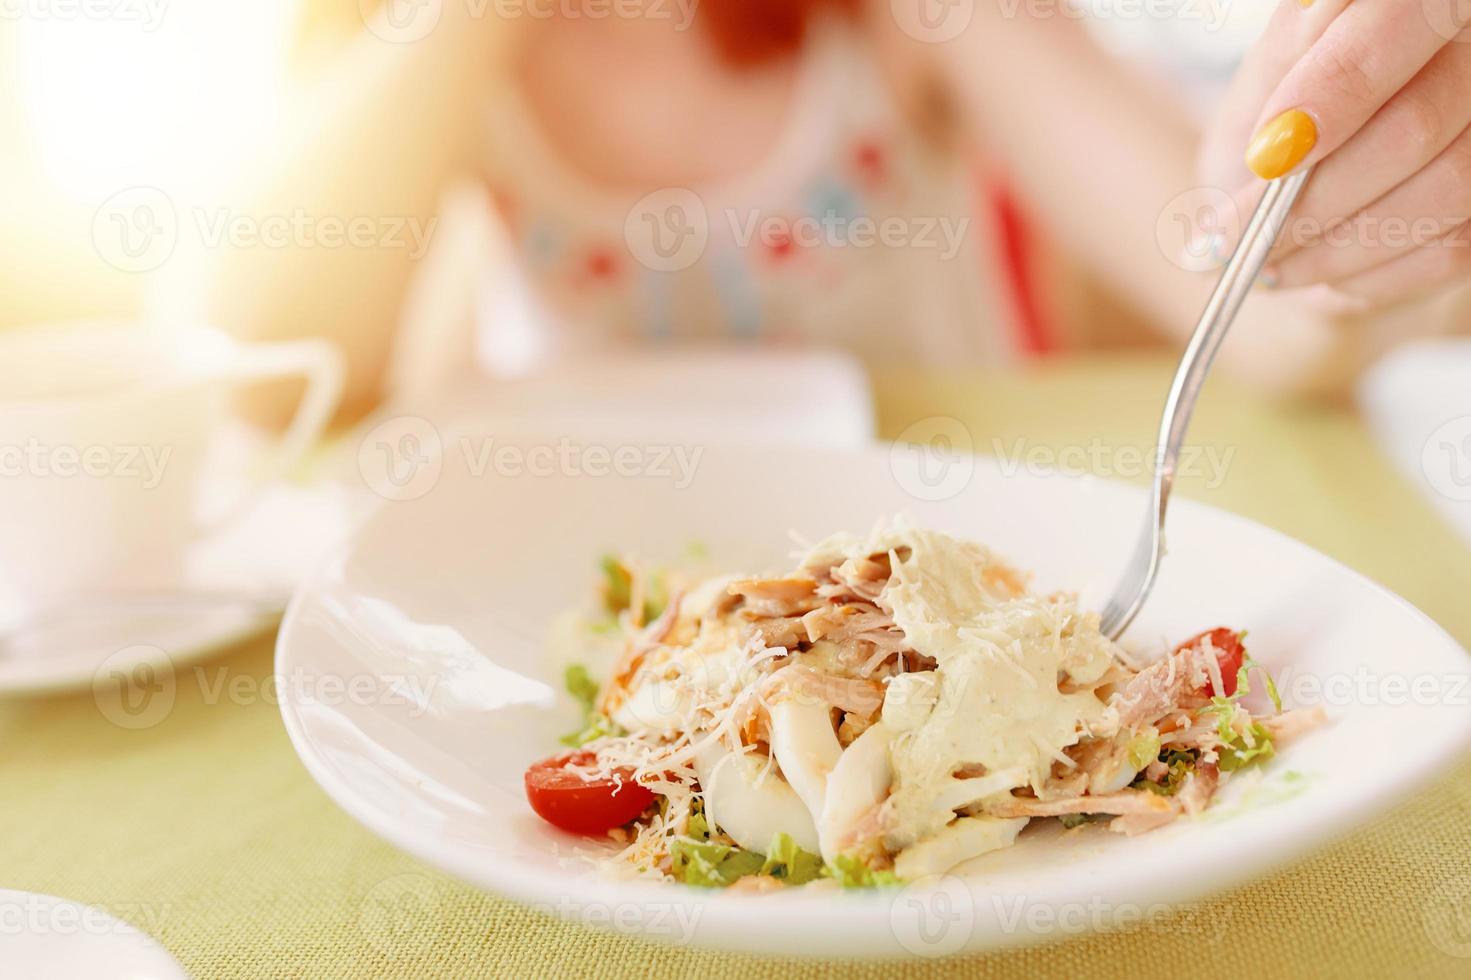 La main de la femme tient une fourchette dans une assiette de salade photo